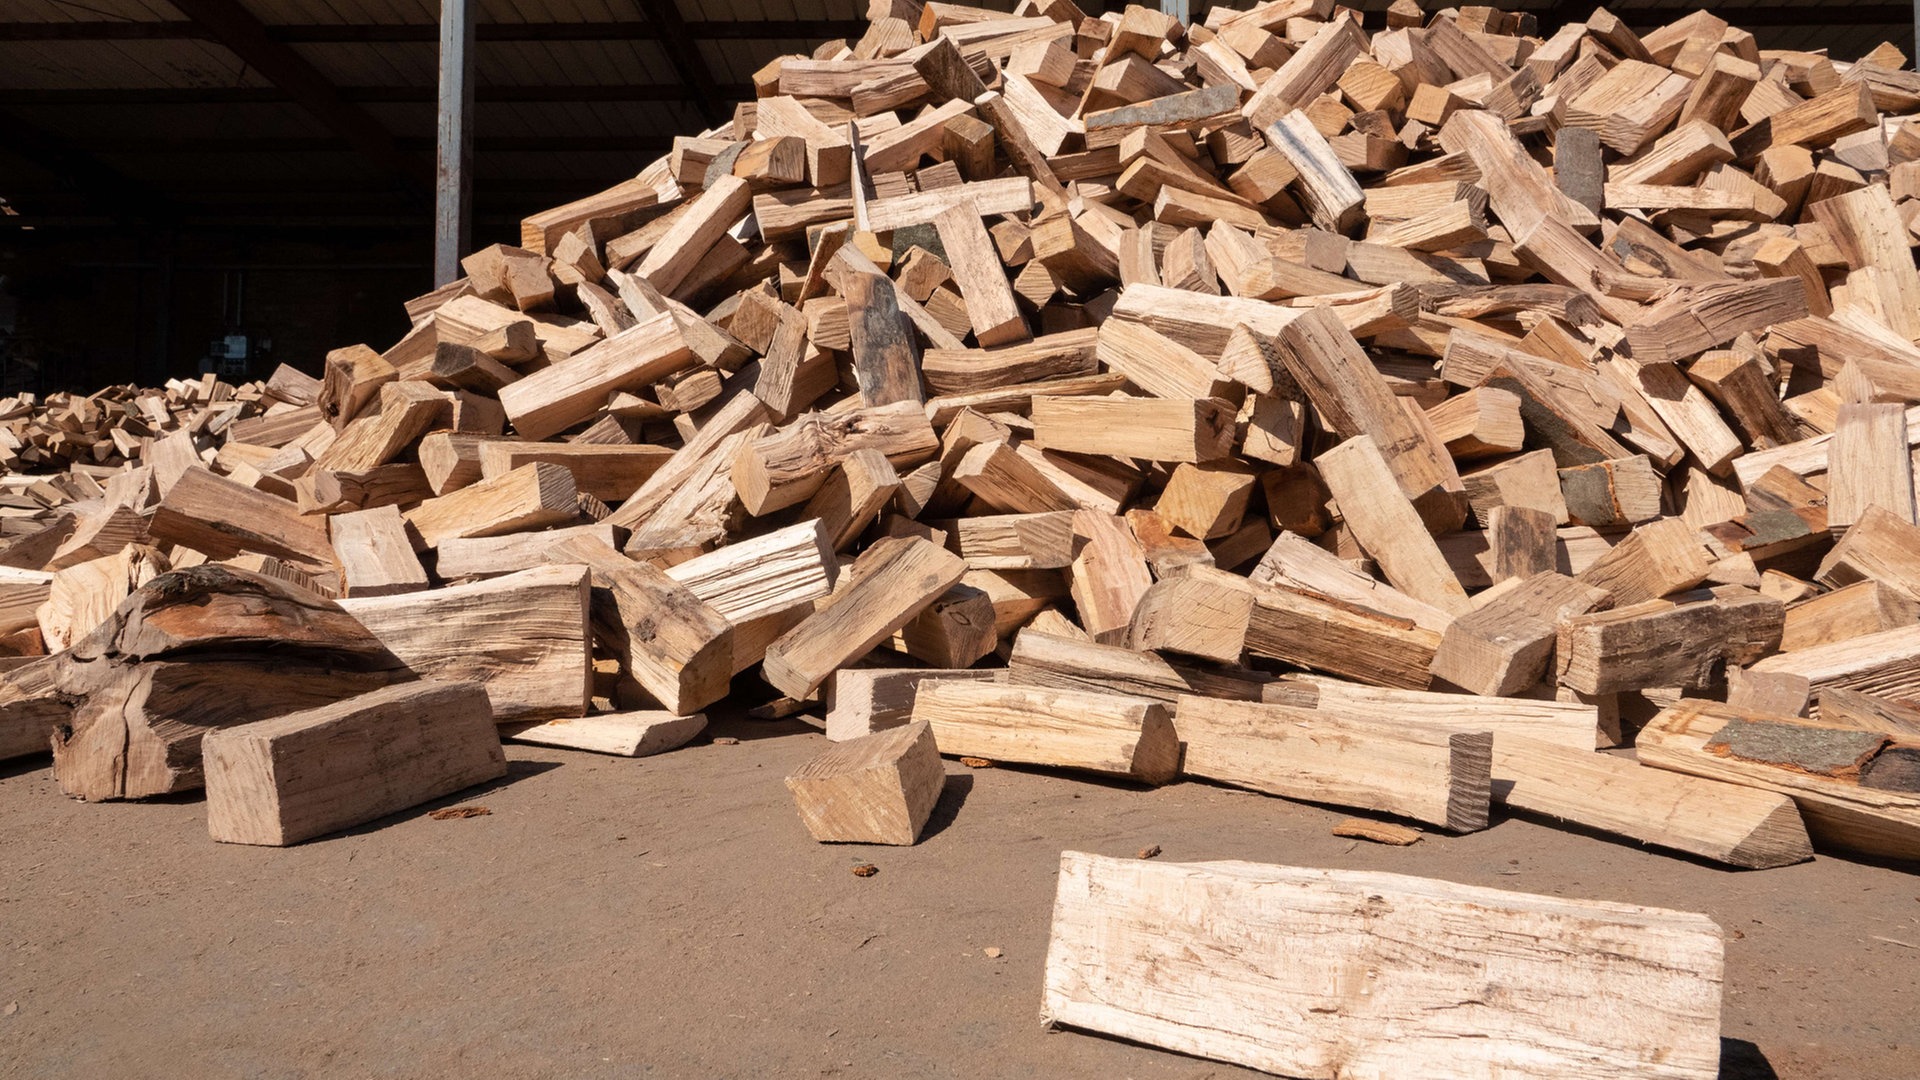 Brennholz kaufen: Vorsicht bei dubiosen Händlern und Fake-Shops